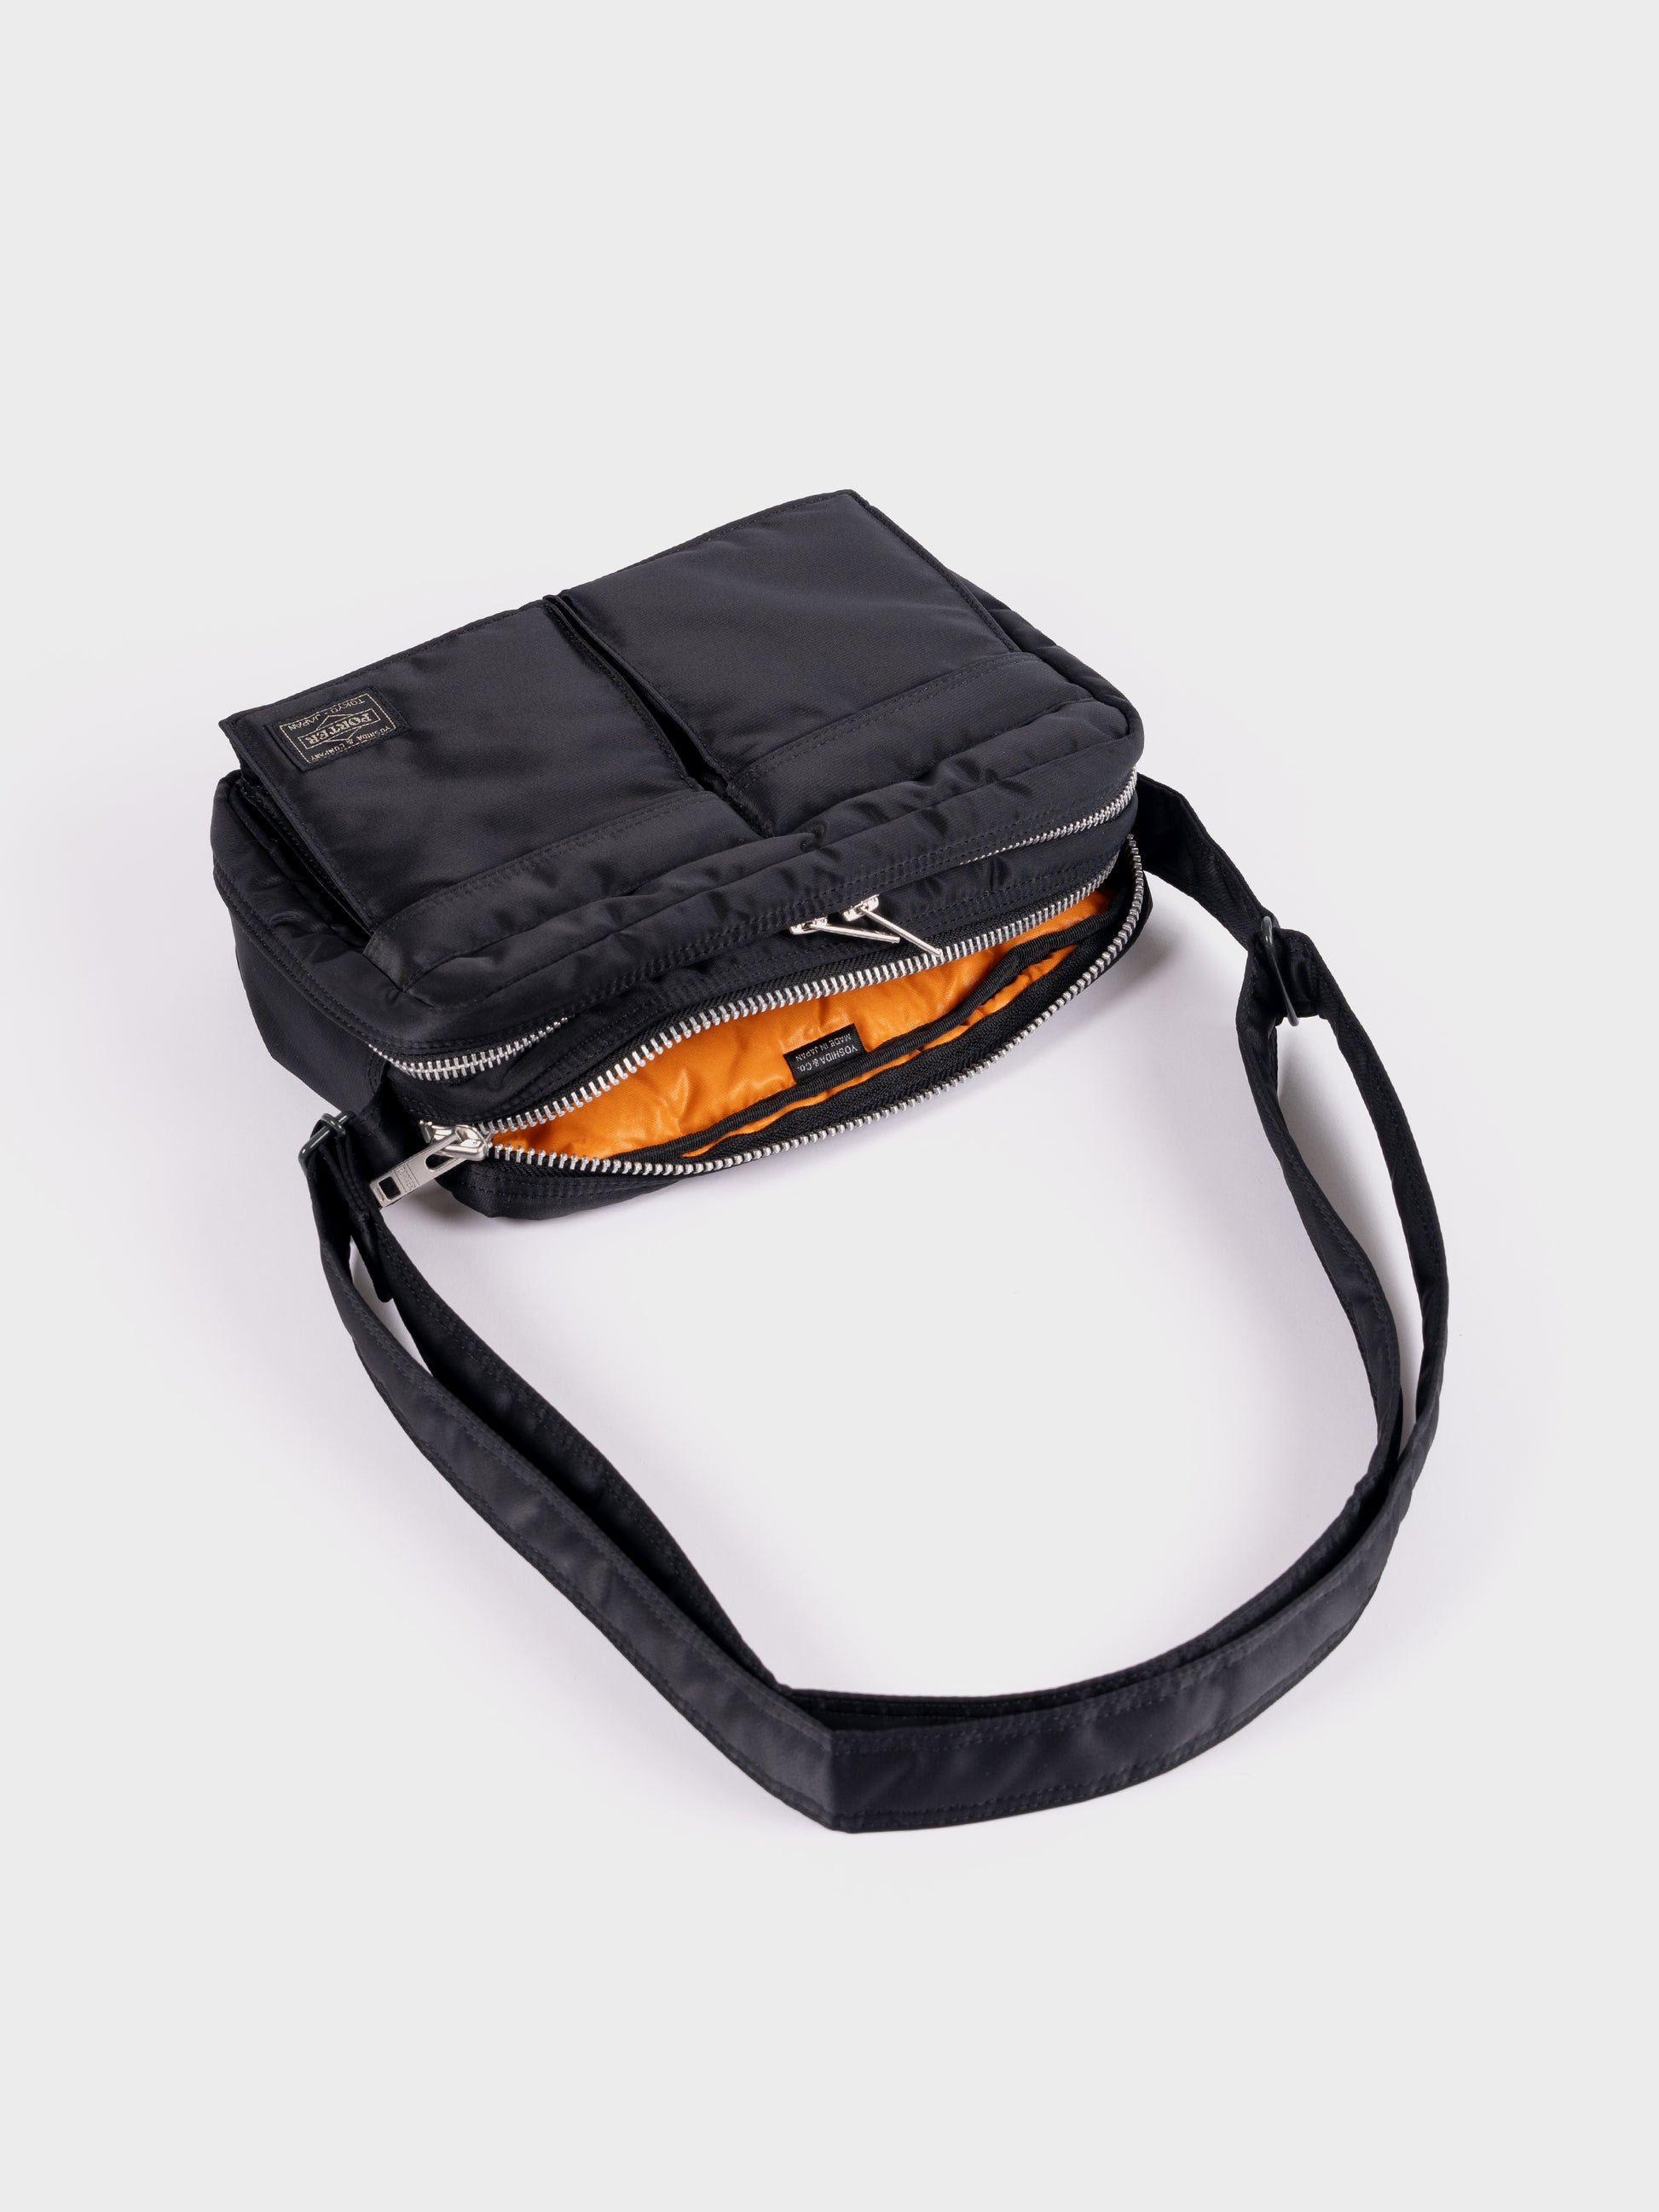 Porter-Yoshida & Co Tanker Shoulder Bag S - Black